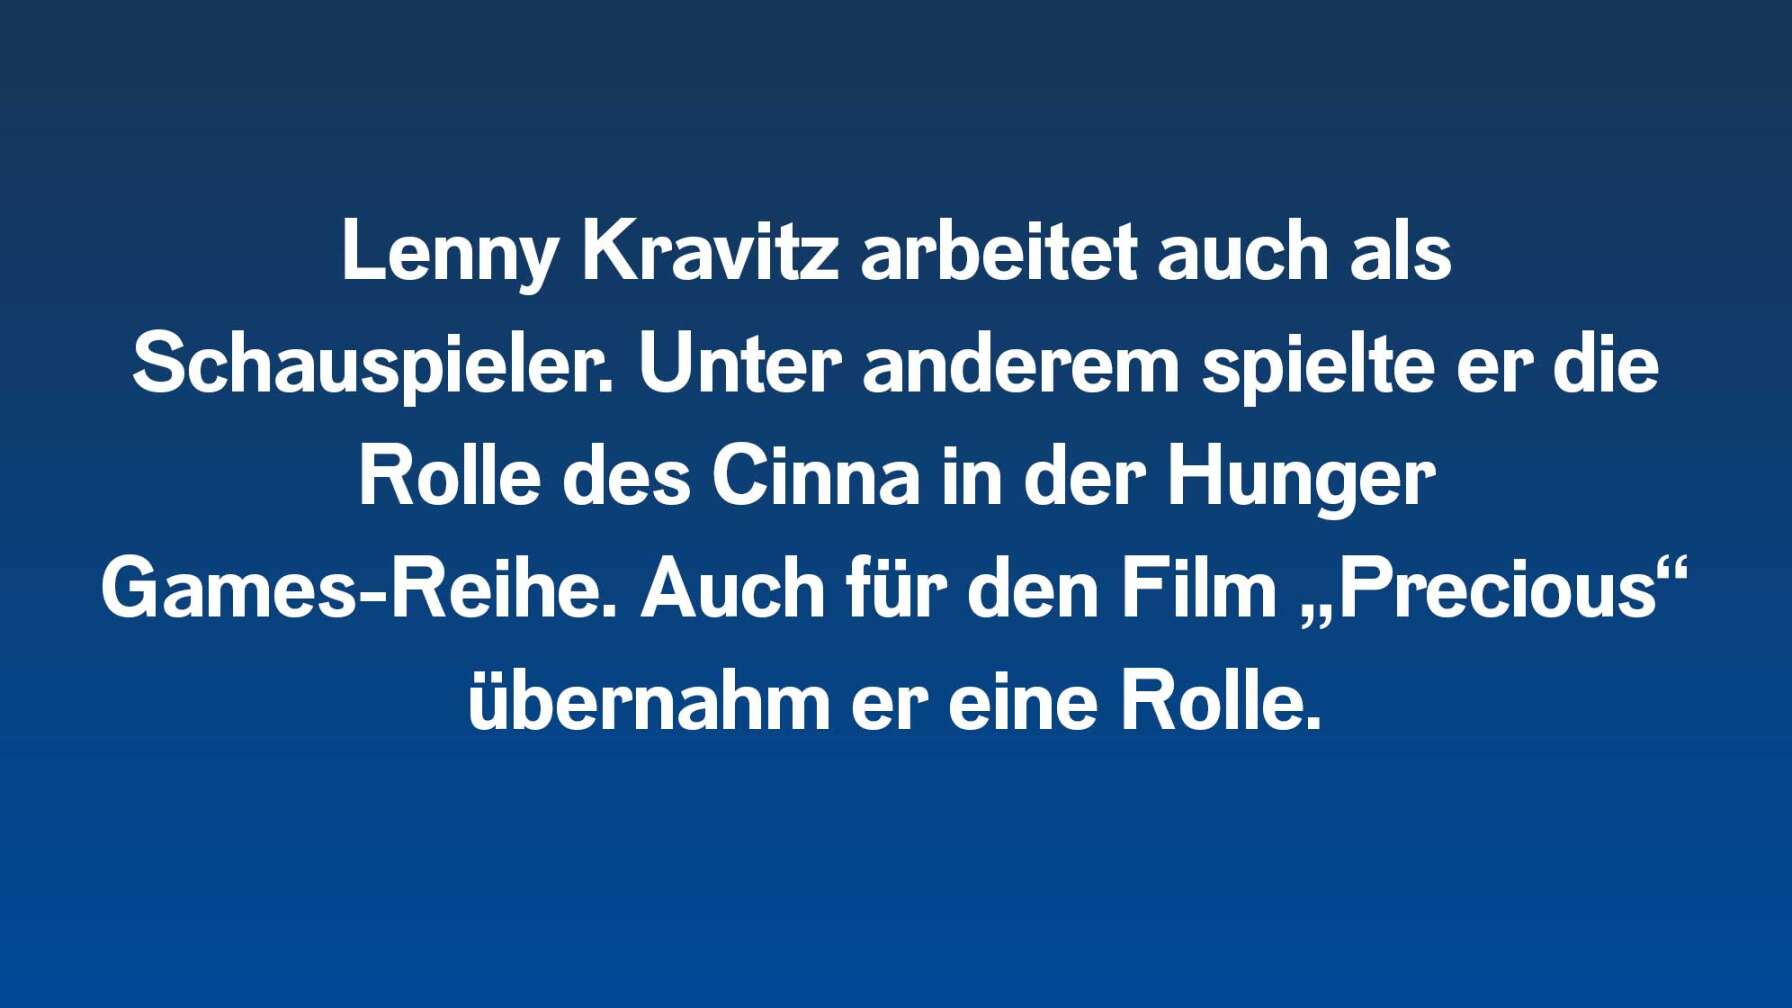 Lenny Kravitz arbeitet auch als Schauspieler. Unter anderem spielte er die Rolle des Cinna in der Hunger Games-Reihe. Auch für den Film „Precious“ übernahm er eine Rolle.